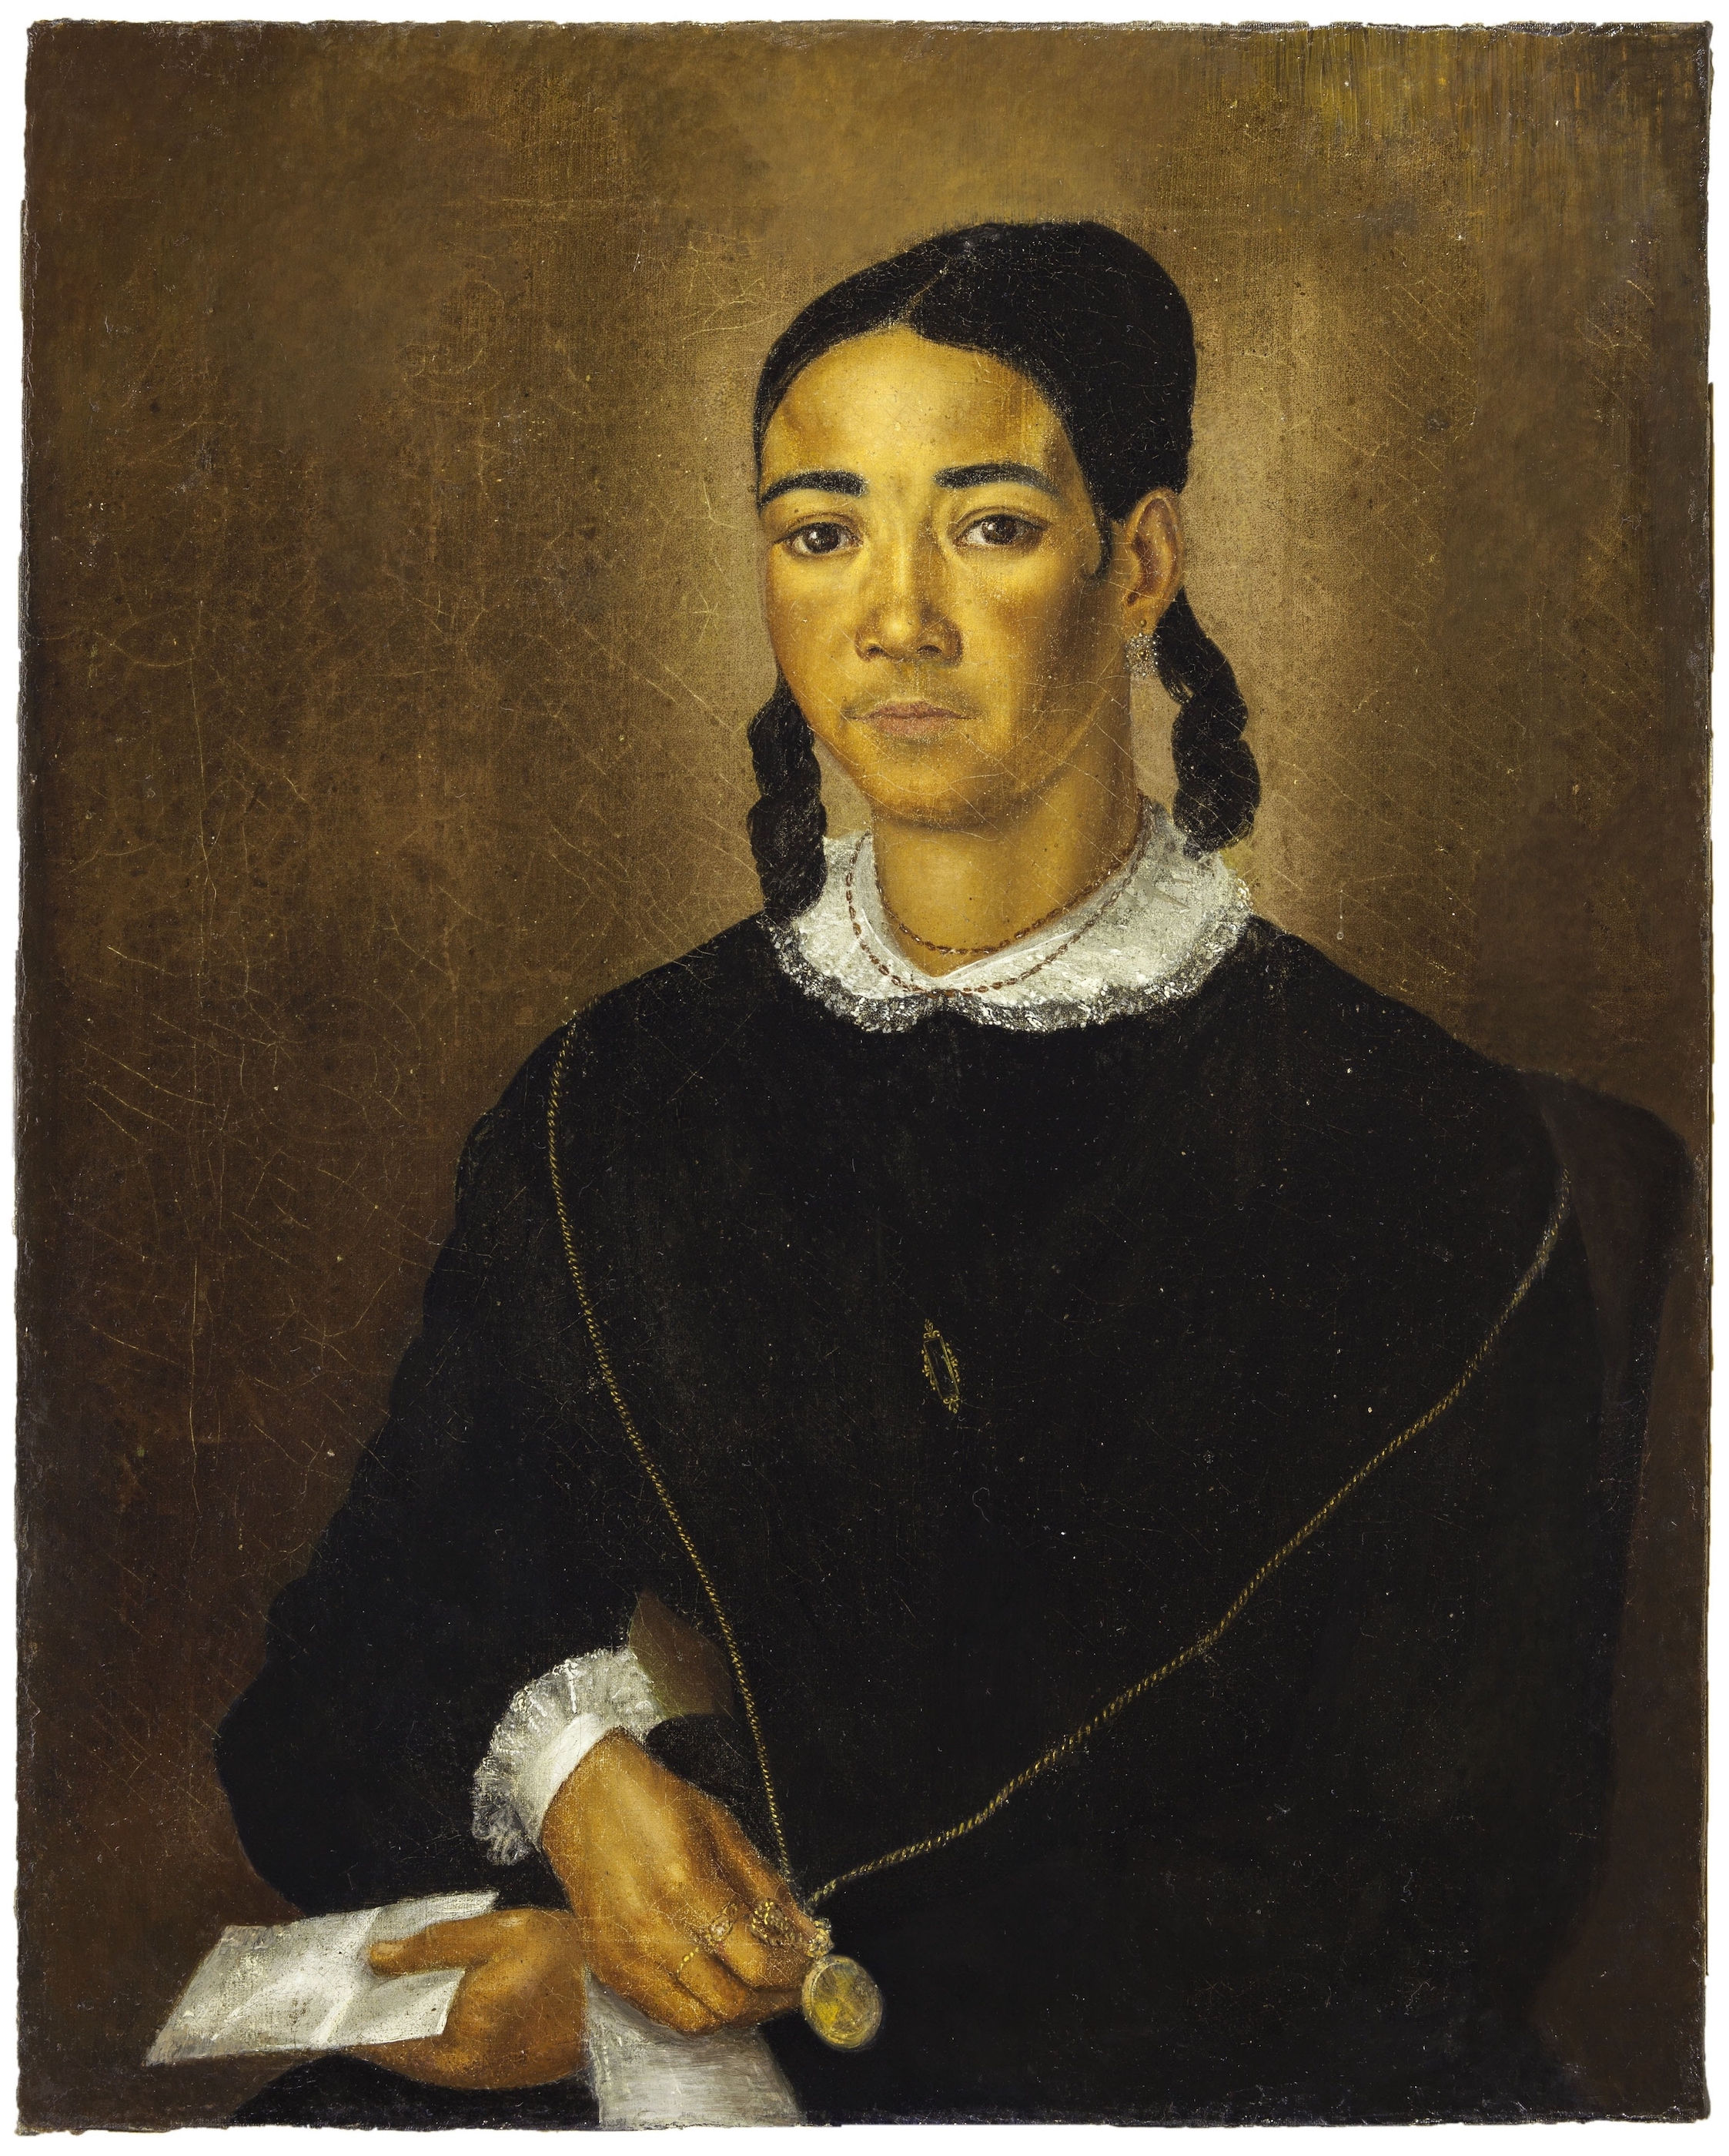 Retrato de una mujer de color libre by François Fleischbein - 1833-1835 - 26 x 21 in Museo de Arte de Nueva Orleans